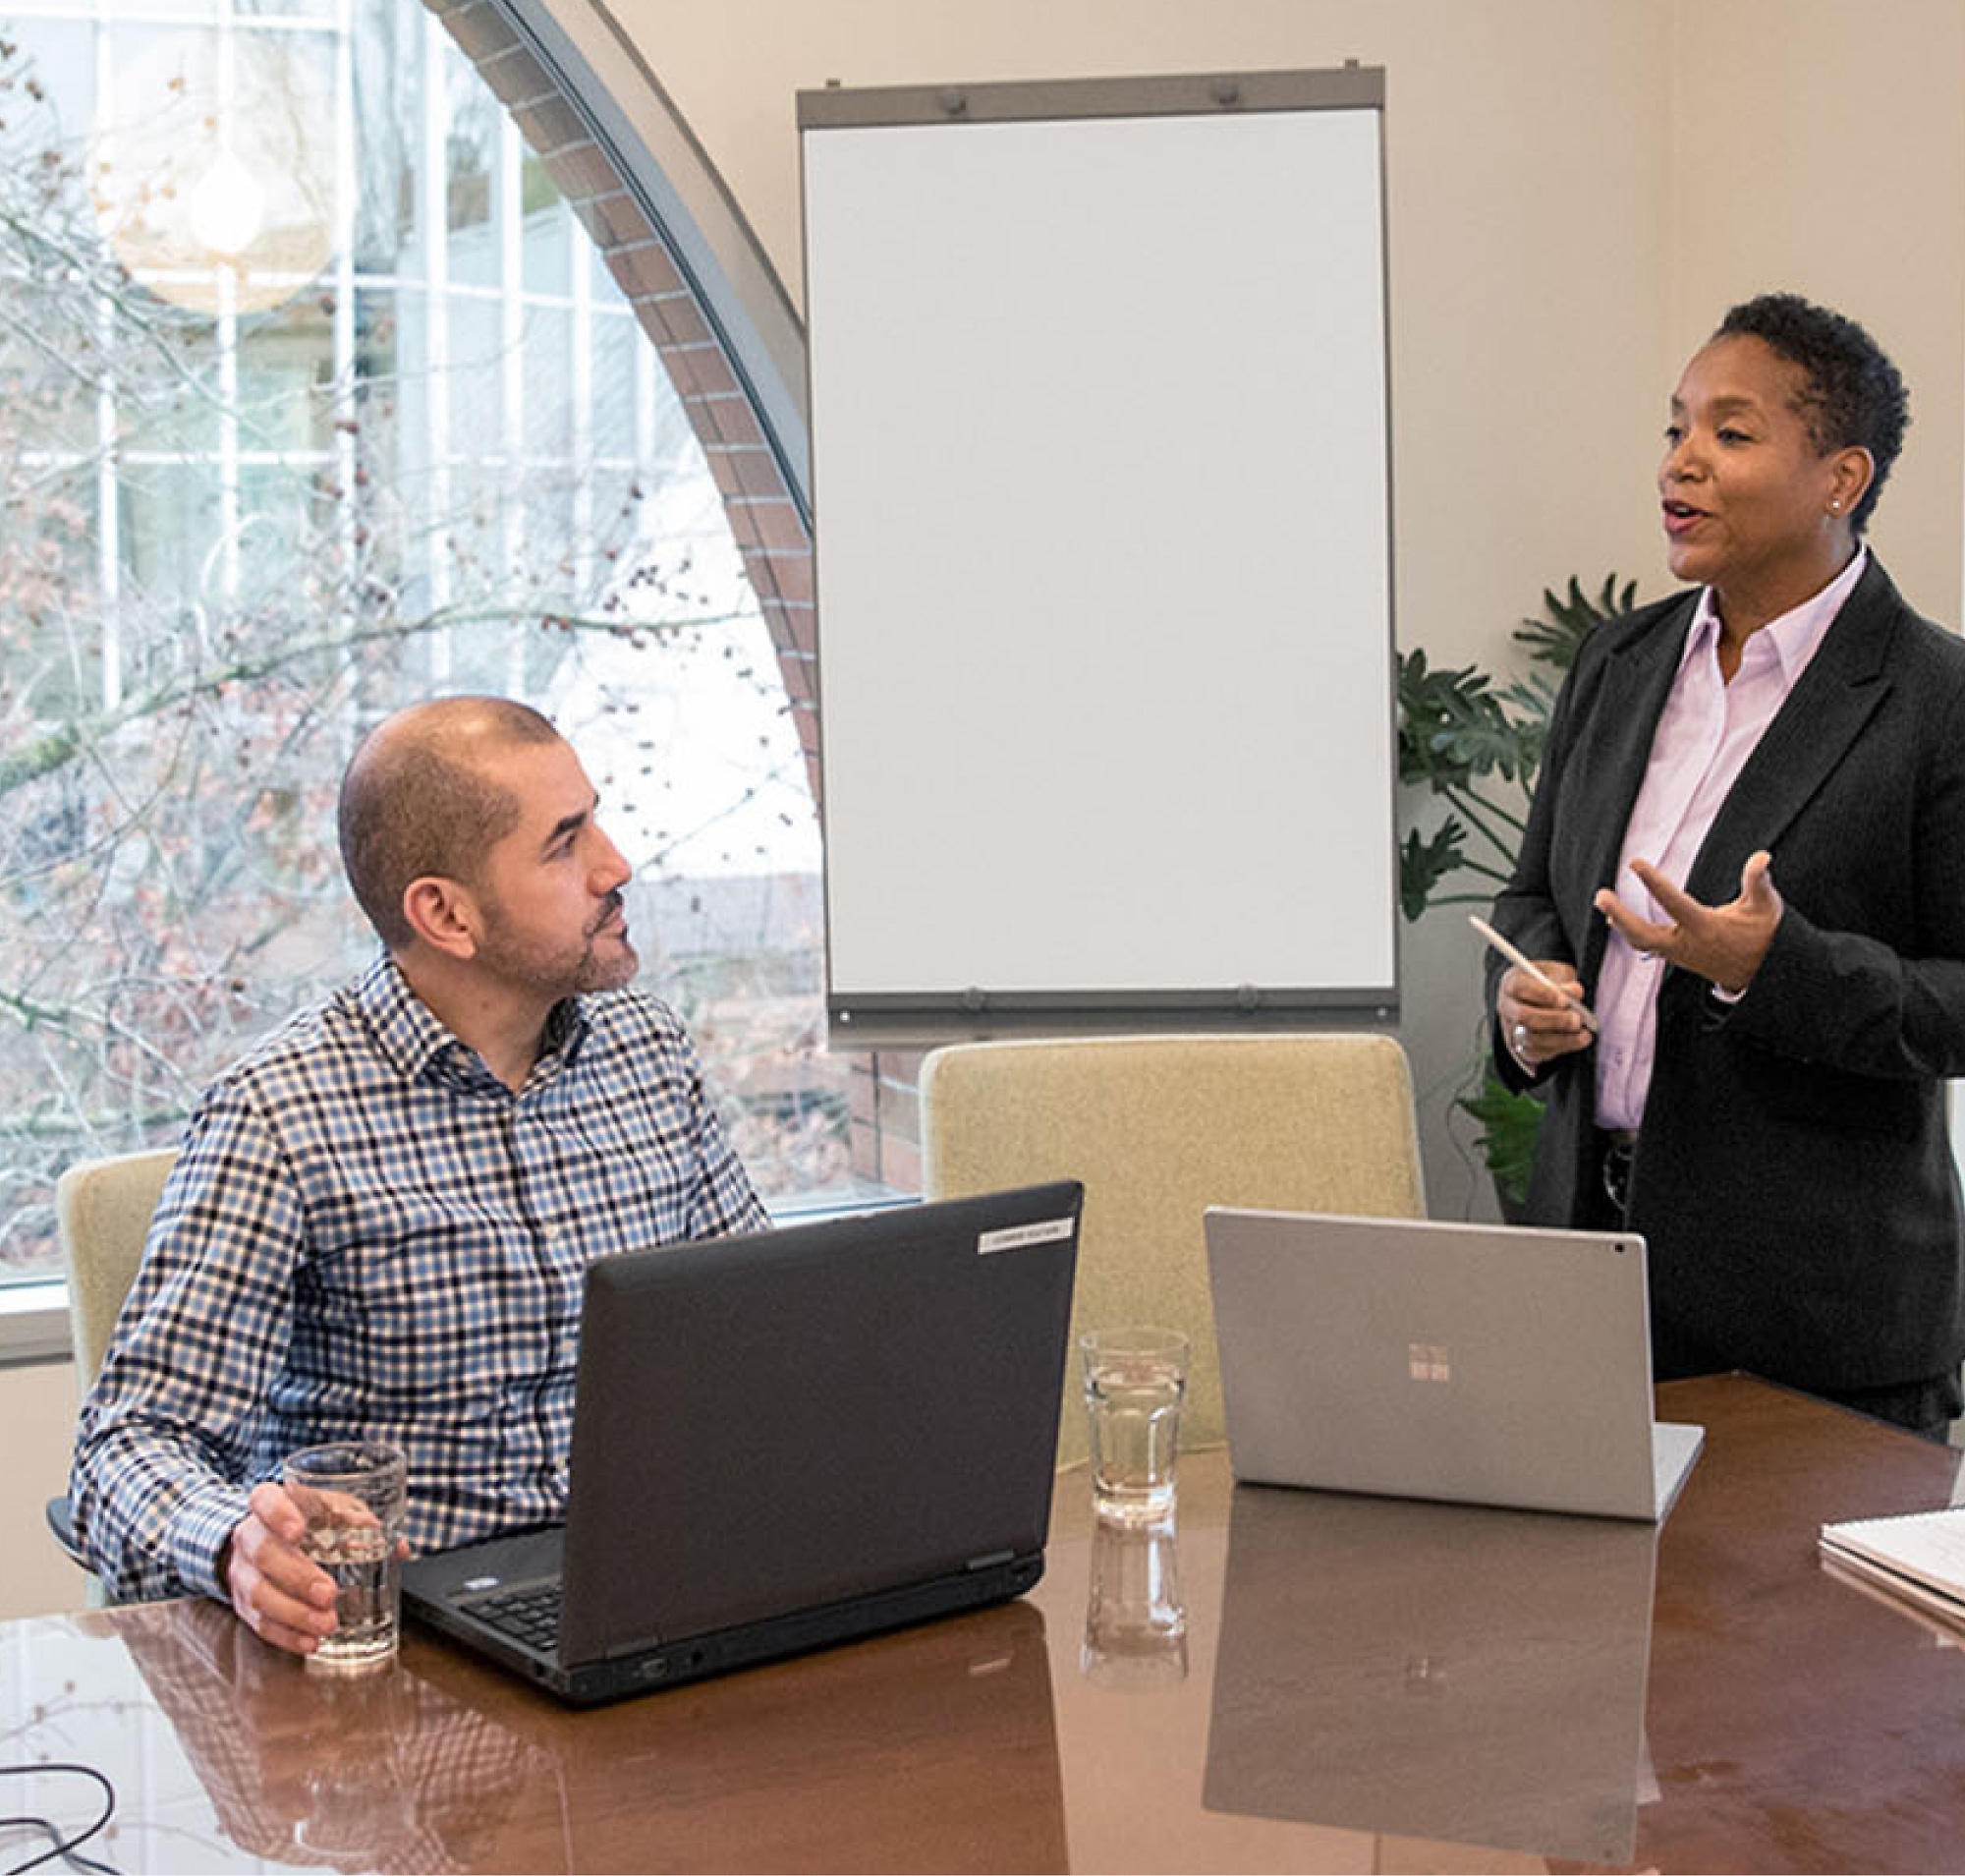 صورة لمتخصصين في غرفة الاجتماعات، أحدهما يقف لتقديم العرض والآخر يجلس على طاولة مع أجهزة كمبيوتر محمولة أمام السبورة البيضاء.